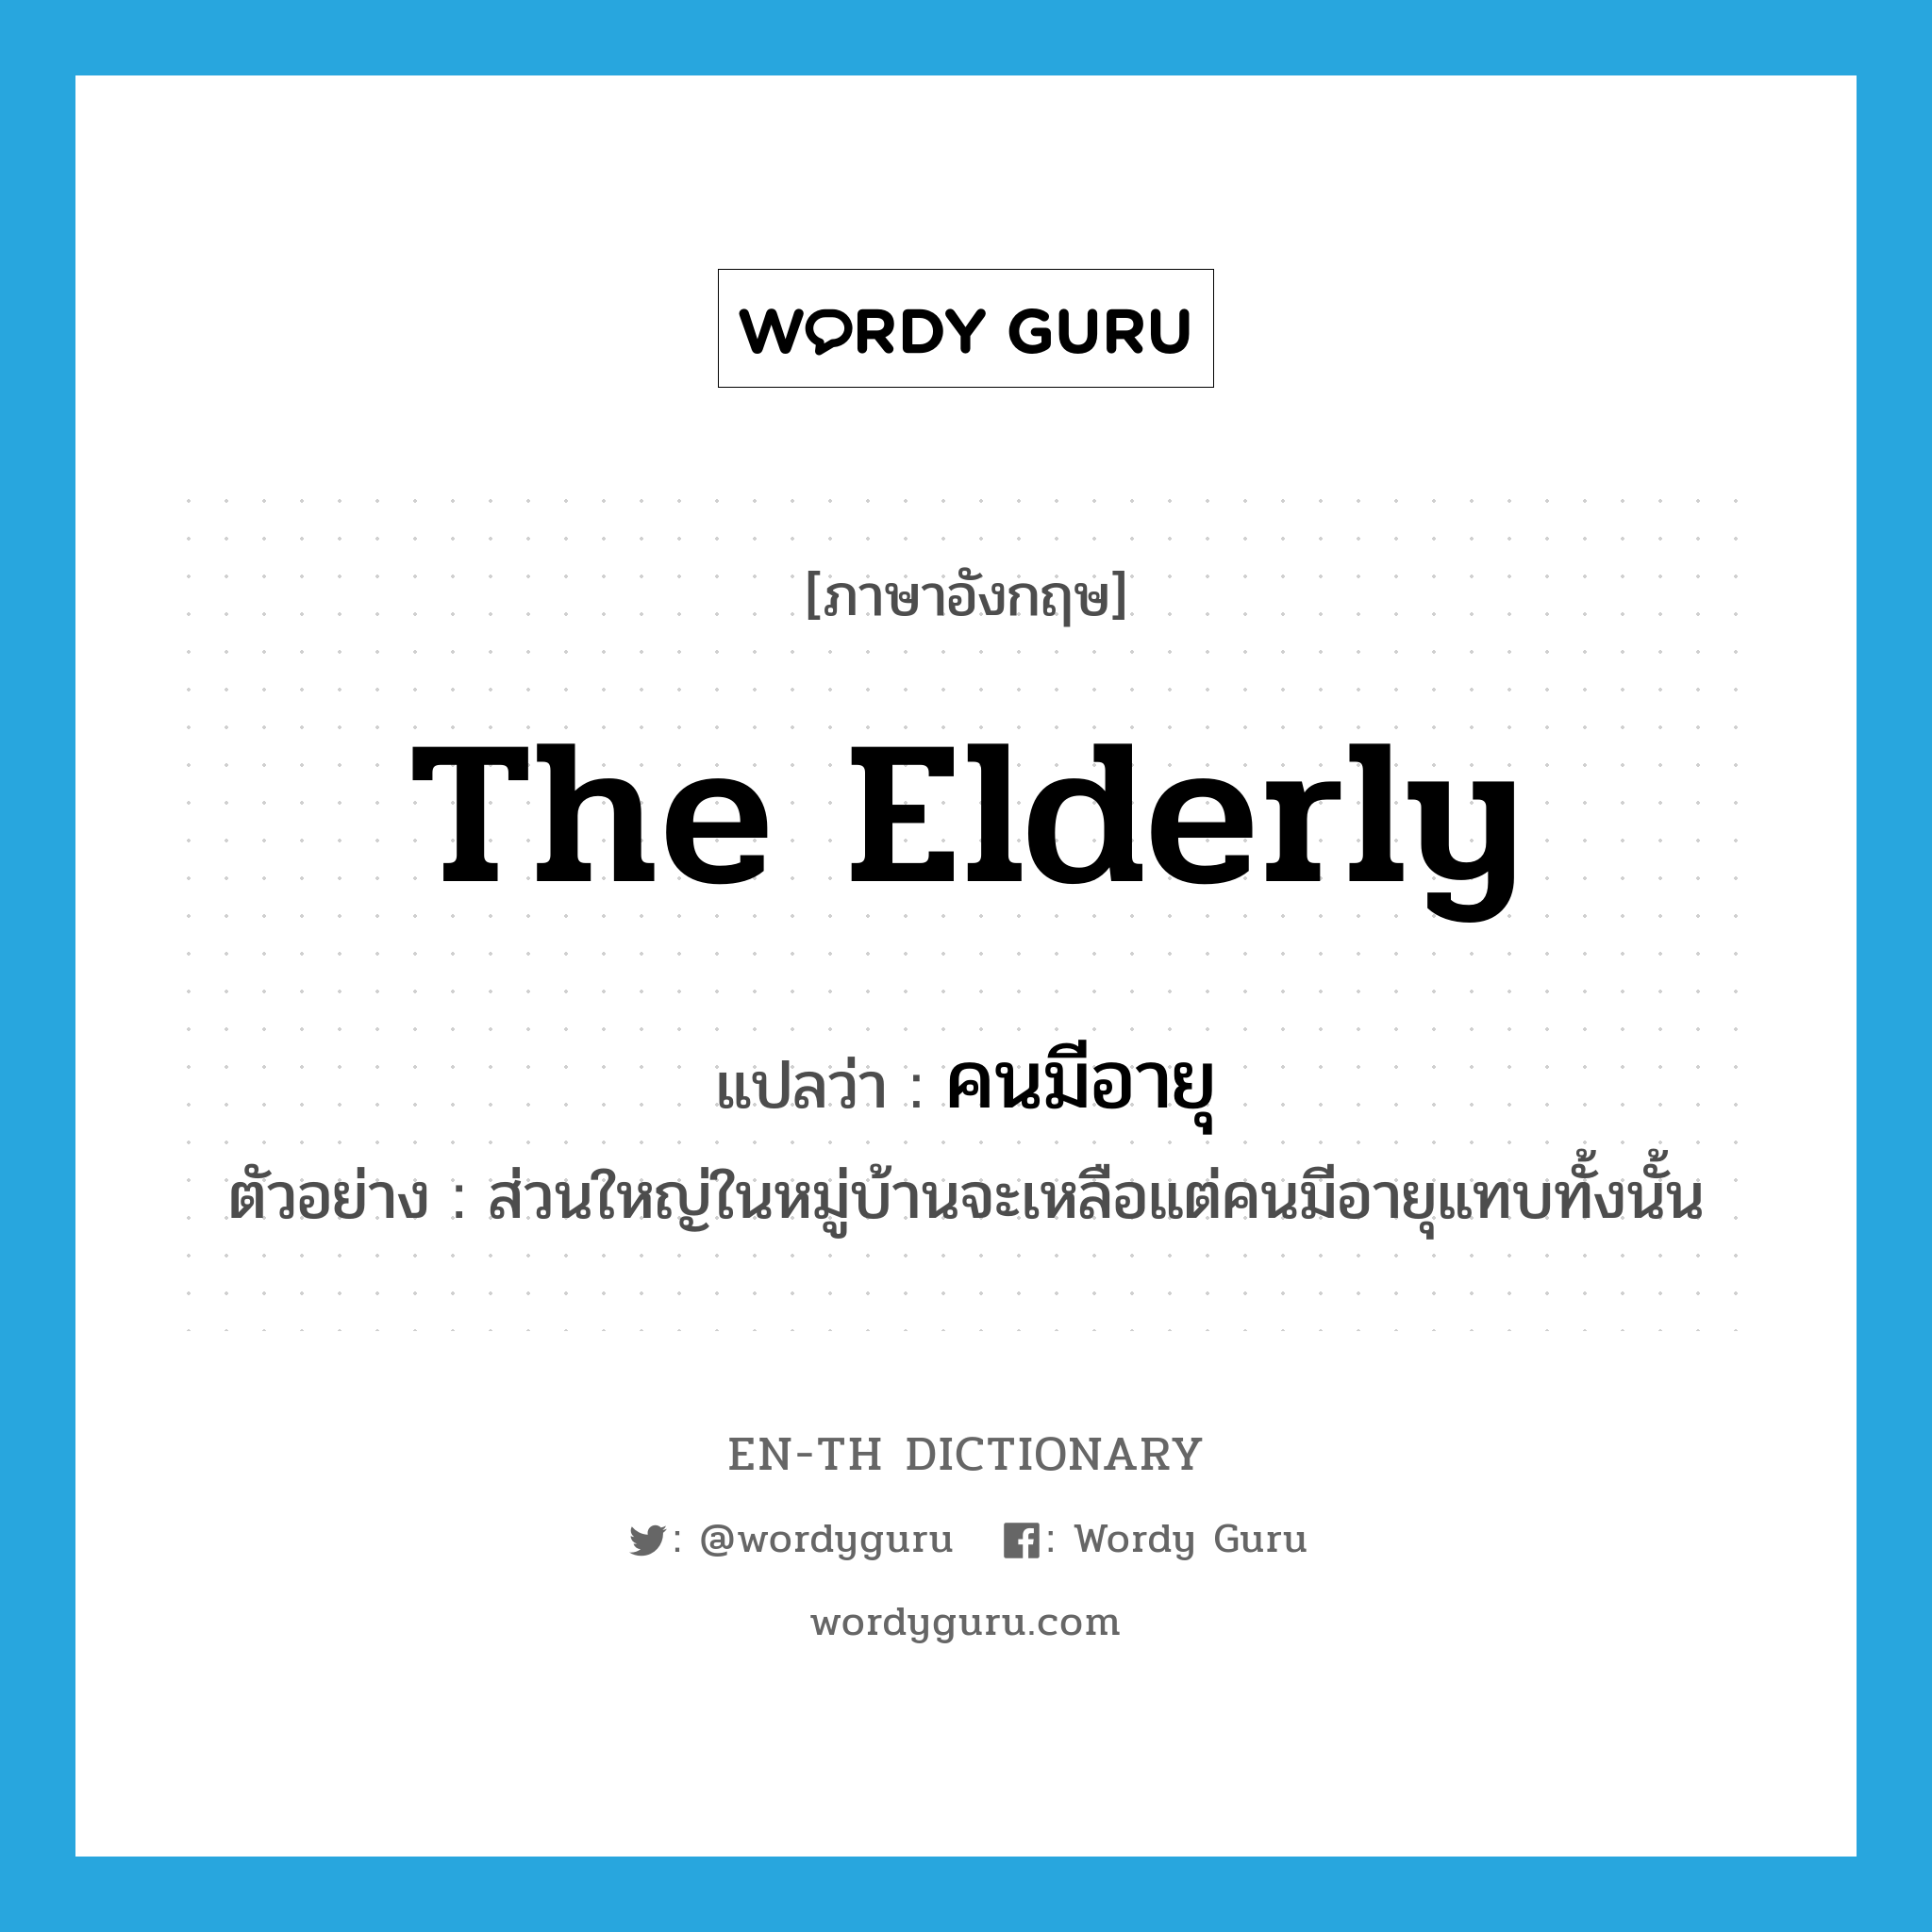 คนมีอายุ ภาษาอังกฤษ?, คำศัพท์ภาษาอังกฤษ คนมีอายุ แปลว่า the elderly ประเภท N ตัวอย่าง ส่วนใหญ่ในหมู่บ้านจะเหลือแต่คนมีอายุแทบทั้งนั้น หมวด N